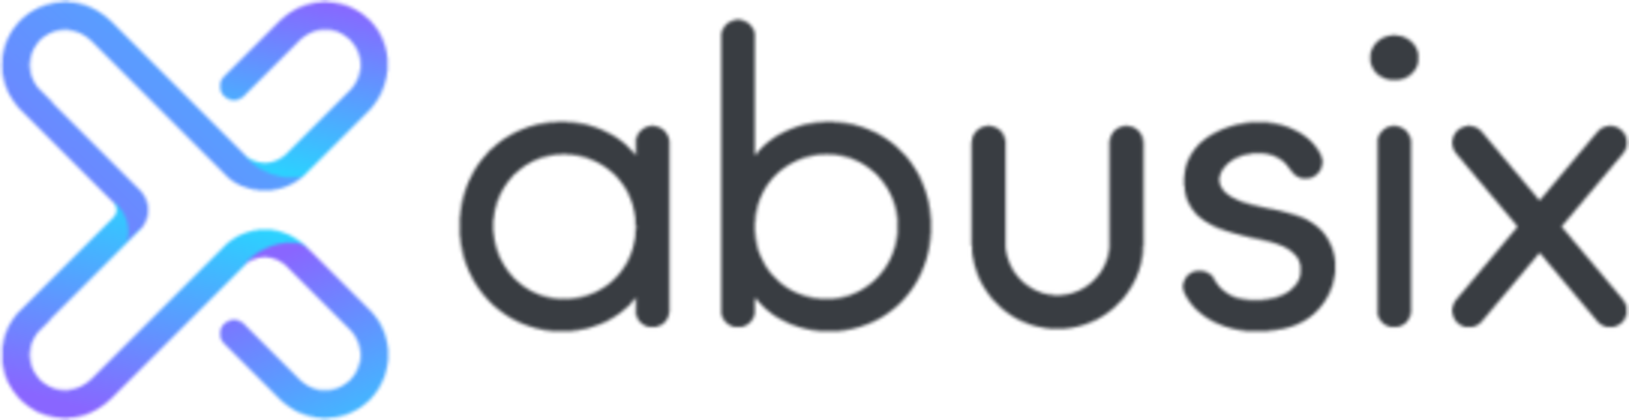 Abusix logo